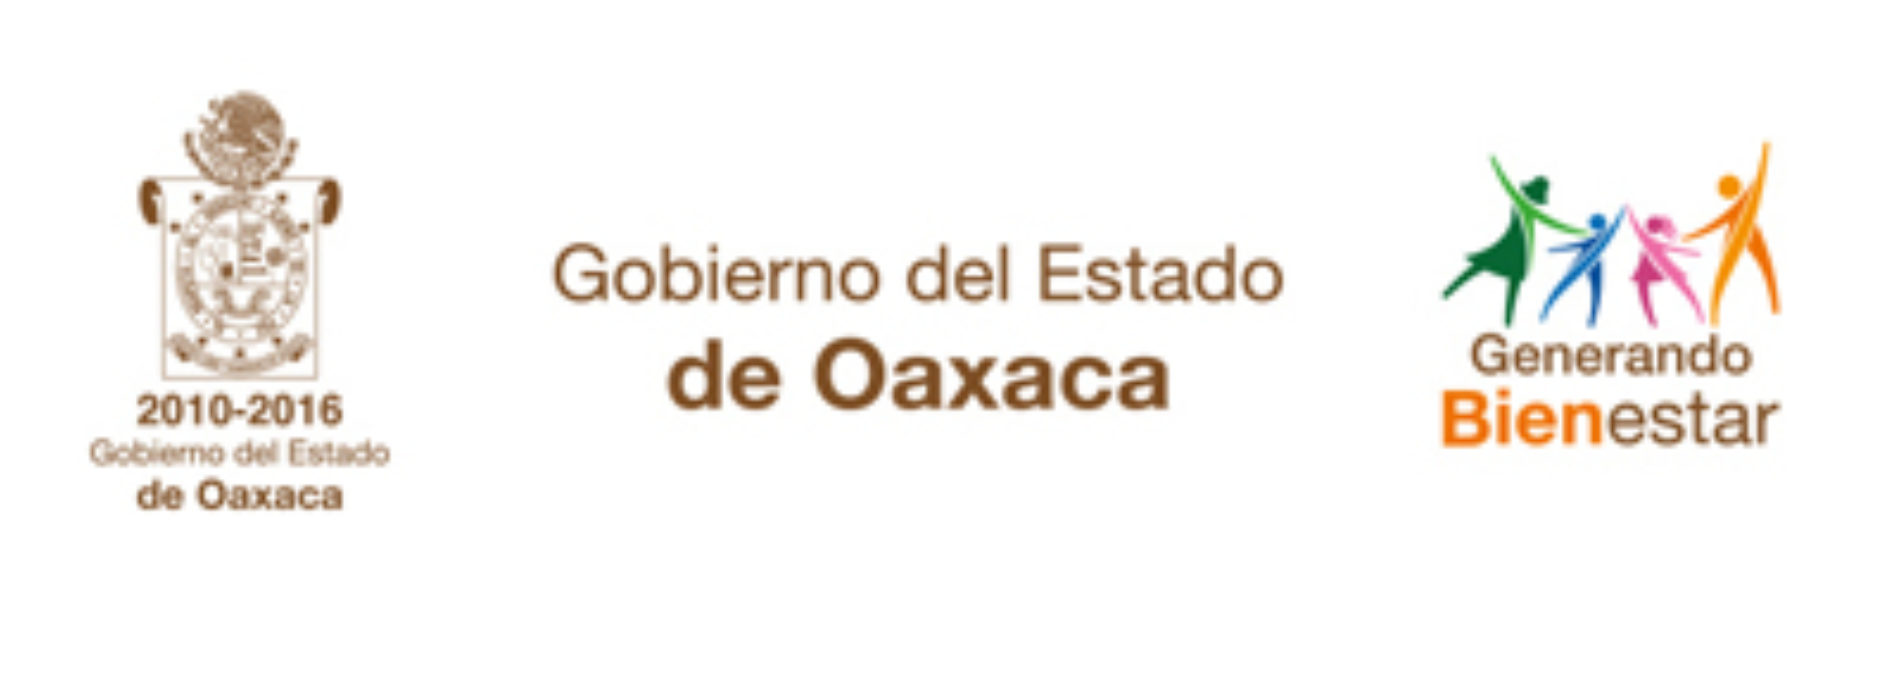 Se pronostican lluvias aisladas y ambiente frío en zonas montañosas de Oaxaca